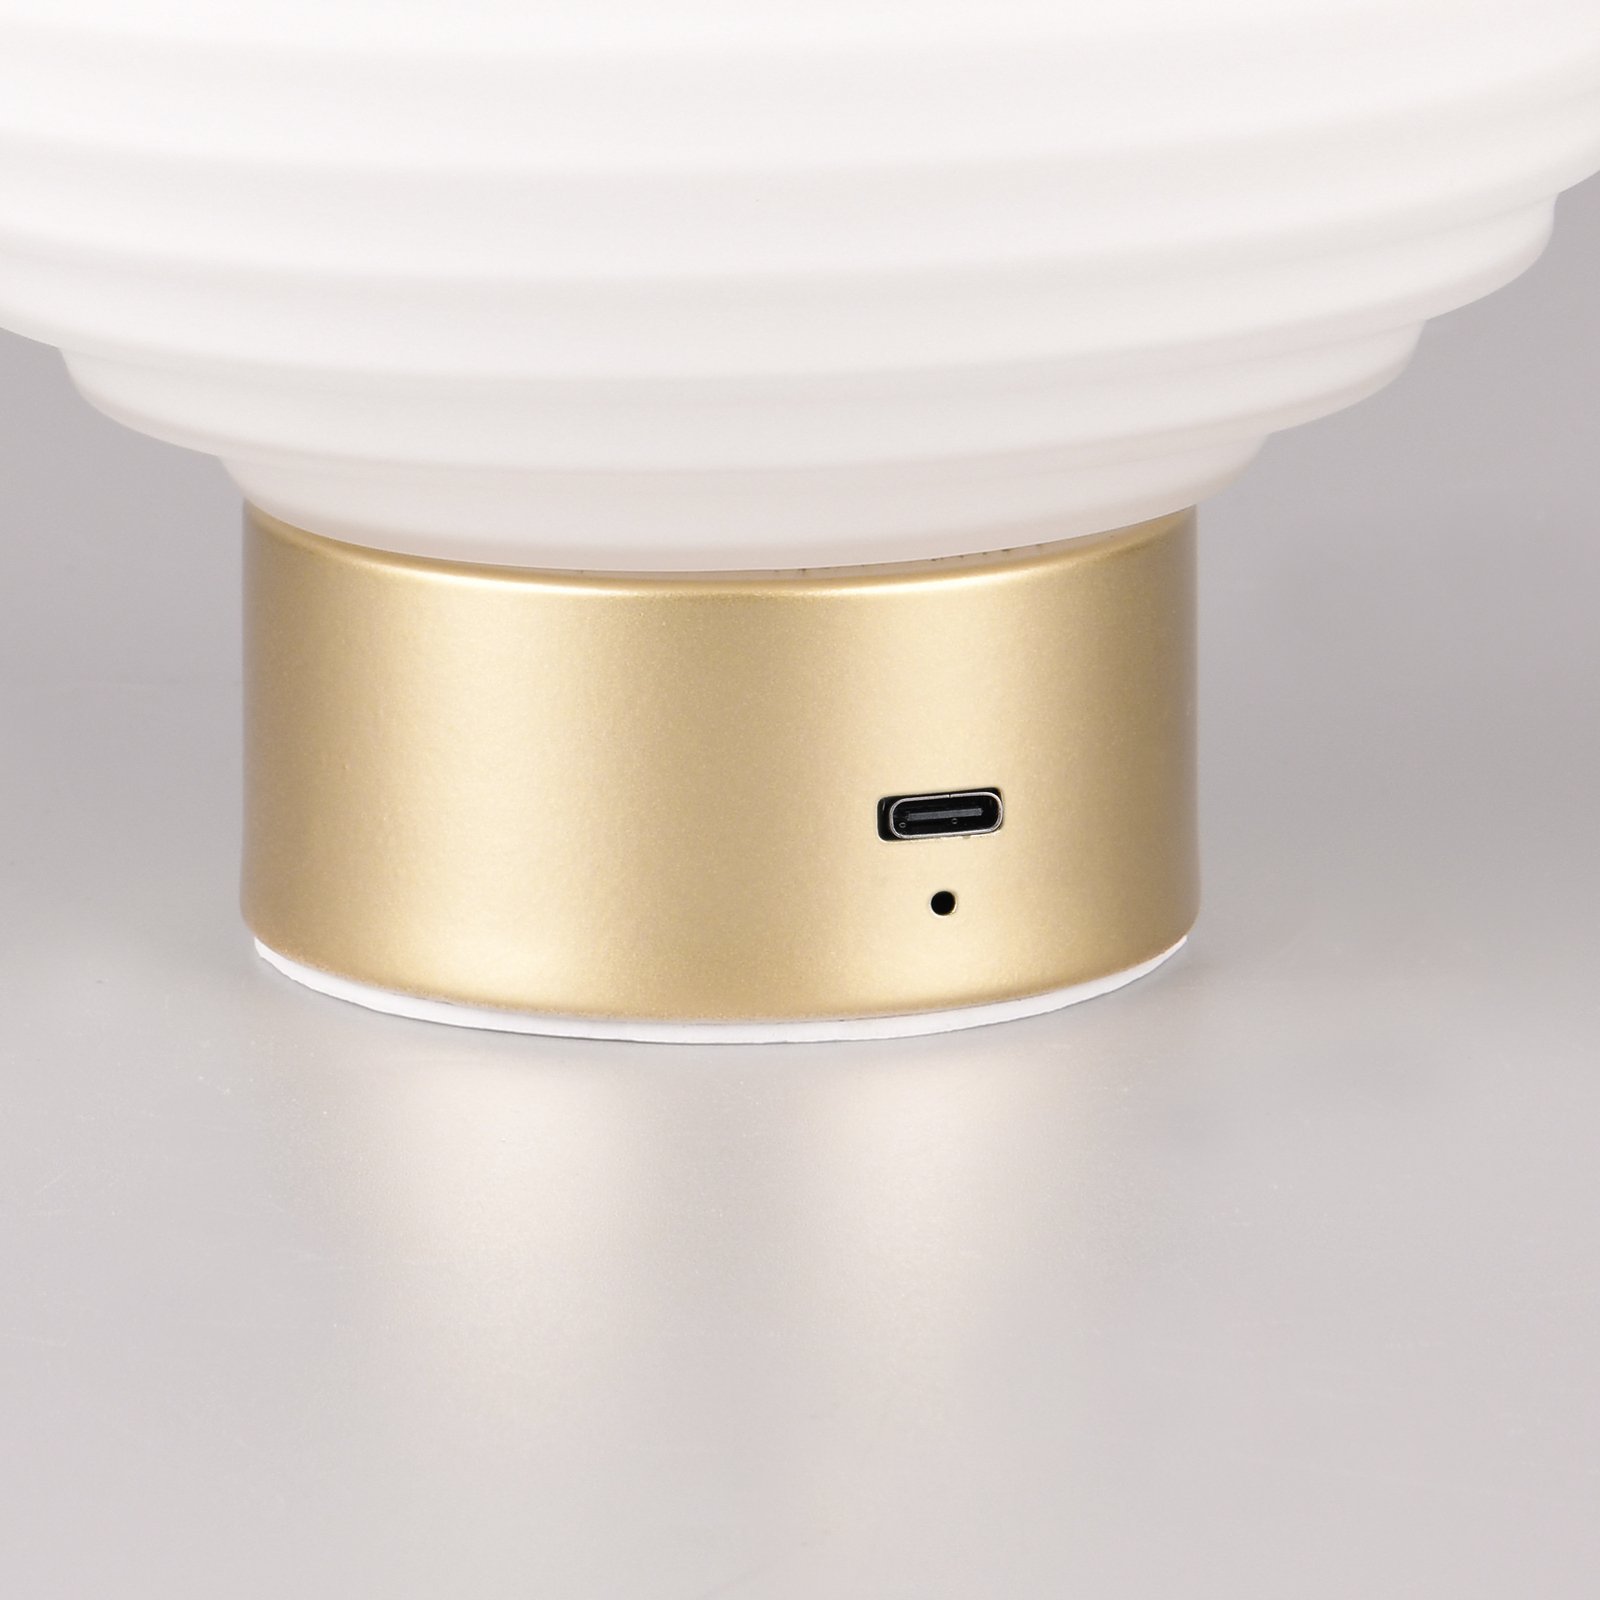 Earl LED tafellamp, messing/opaal, hoogte 14,5 cm, glas